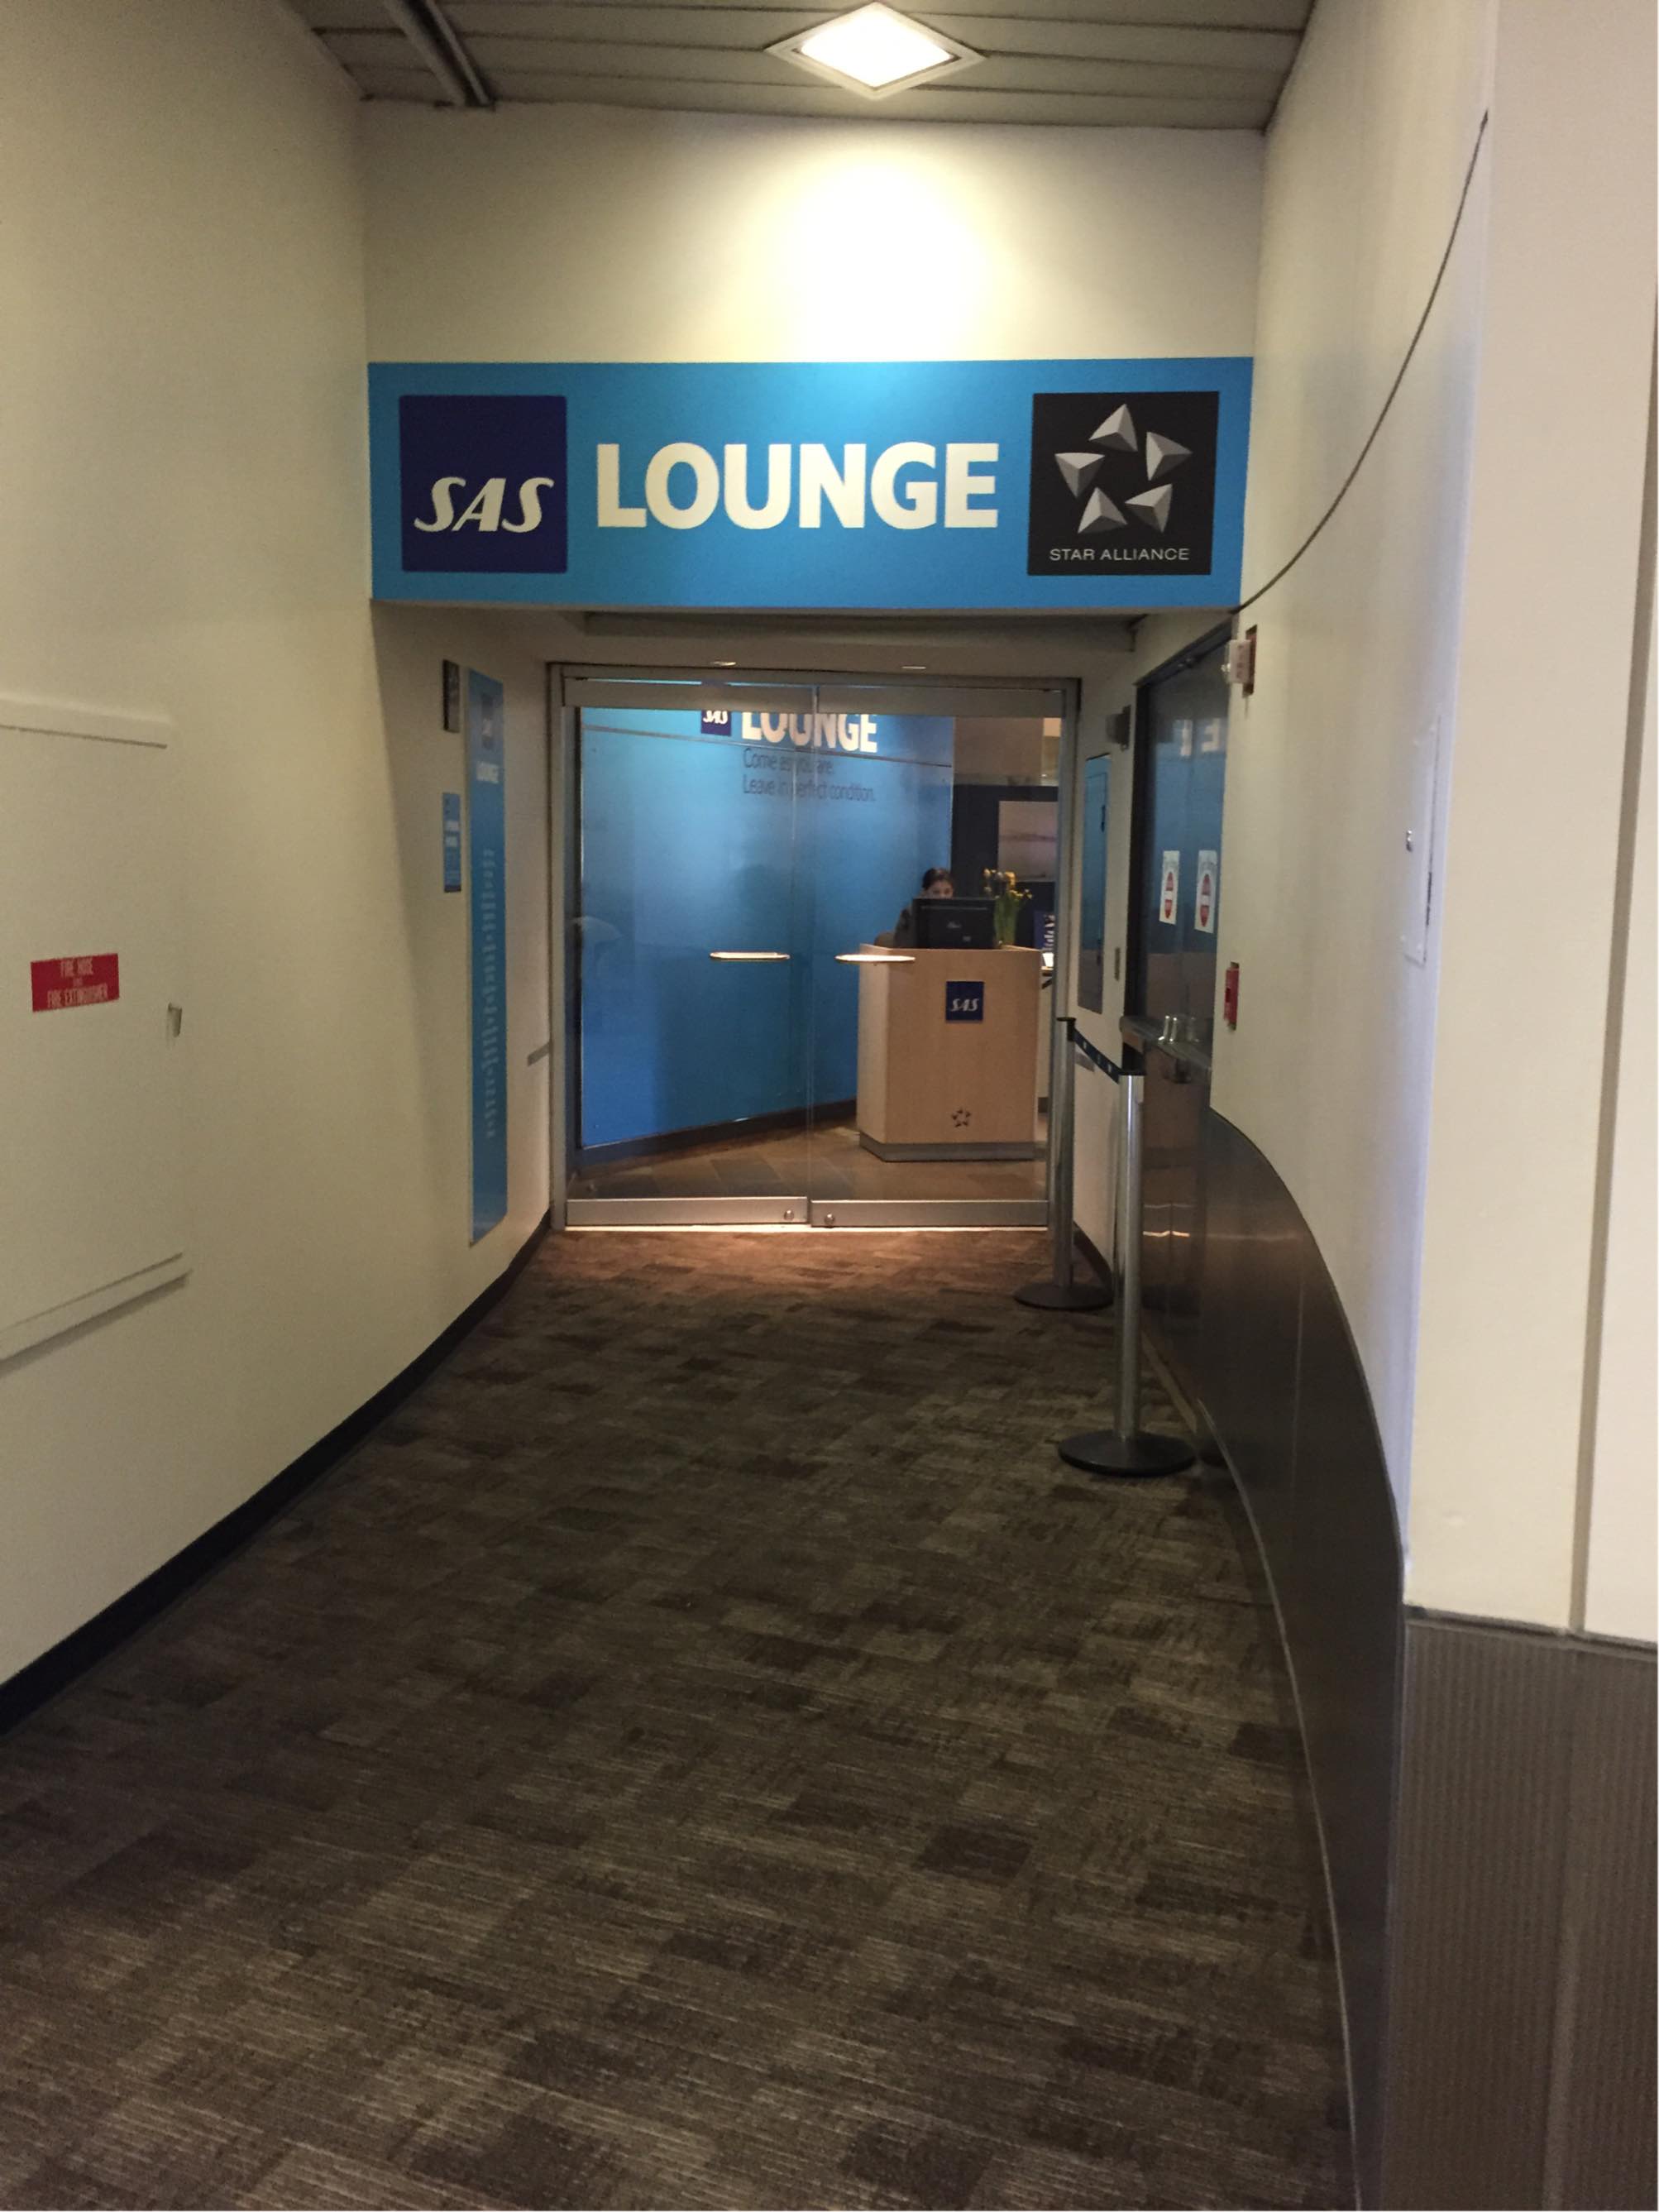 EWR: SAS Lounge Reviews & Photos - Terminal B, B3 Liberty Airport | LoungeBuddy